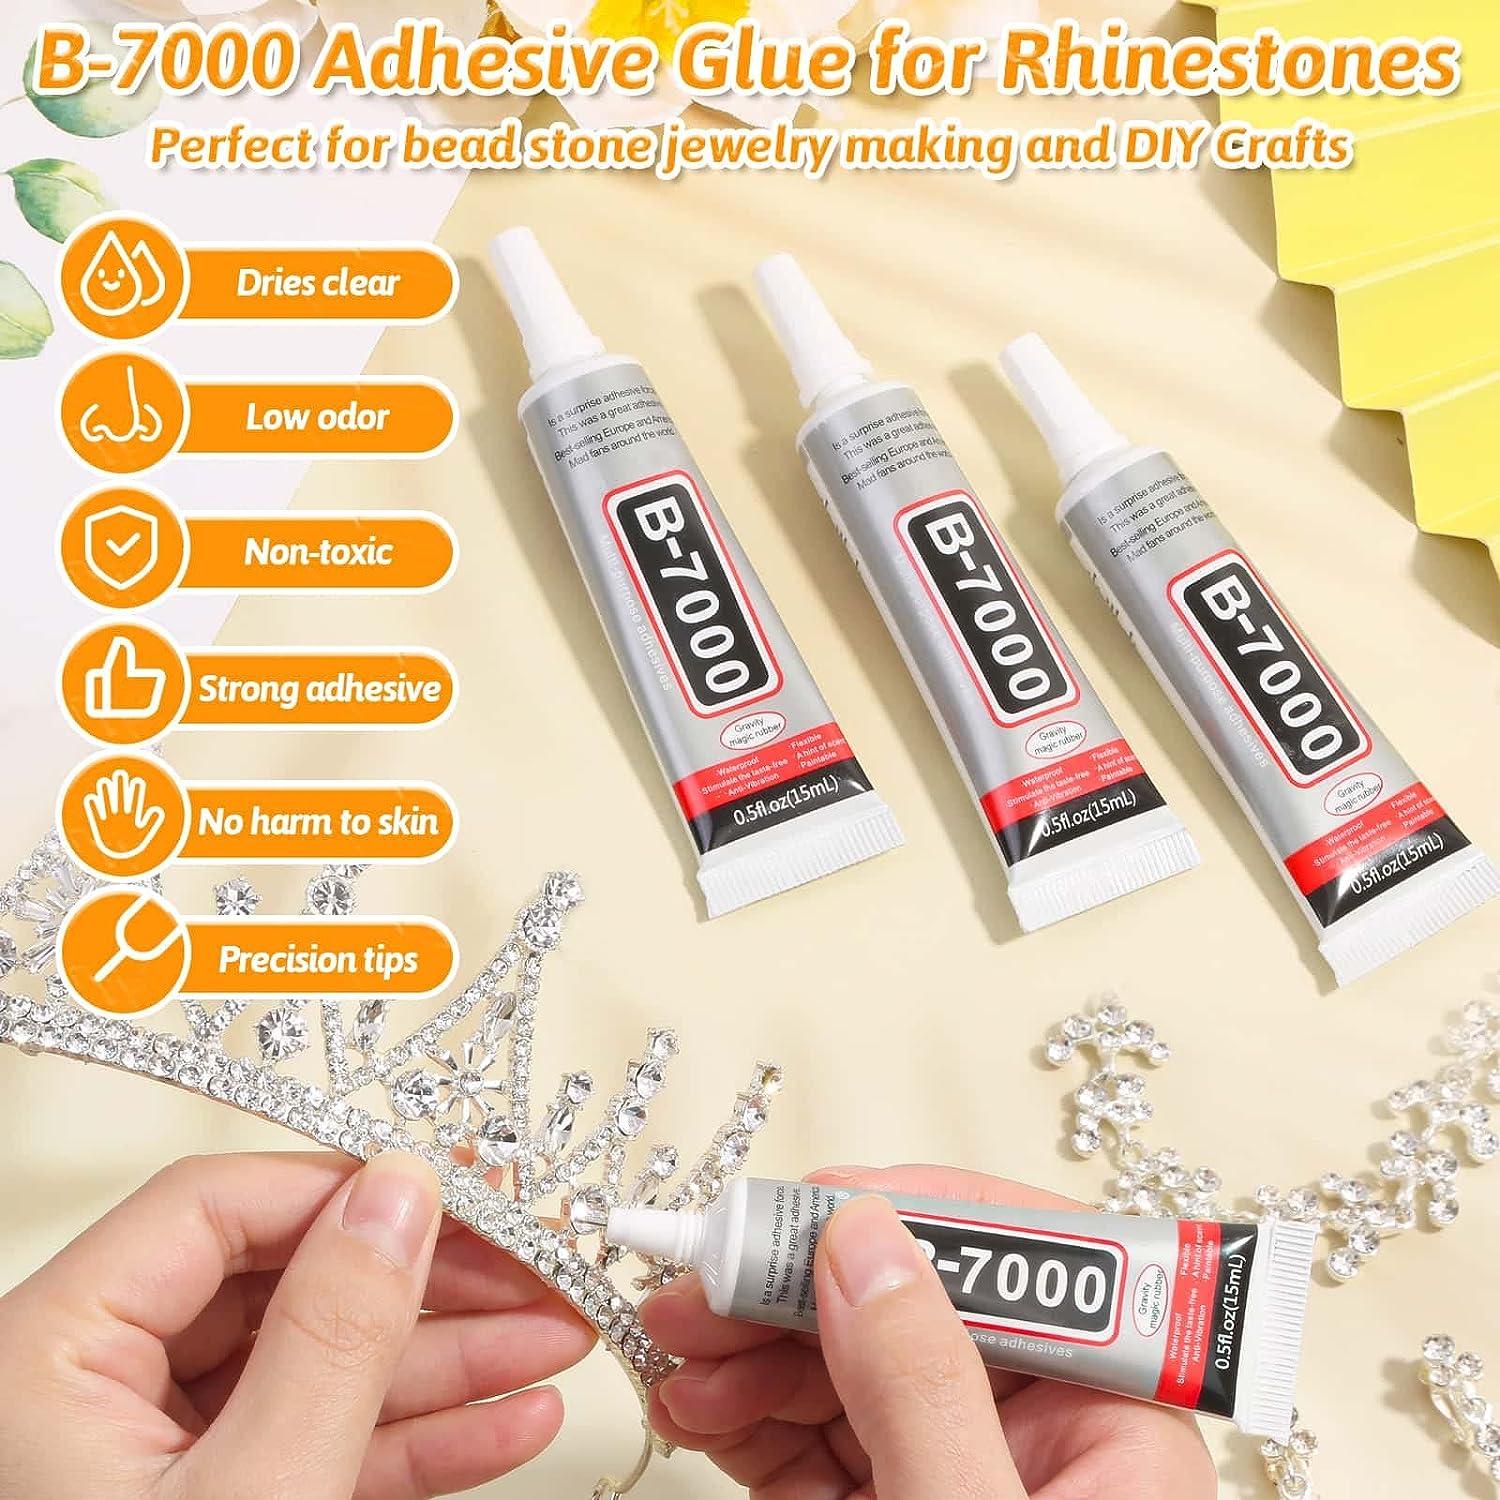 B7000 Rhinestones Clear Glue with Rhinestones for Crafts, 3600Pcs